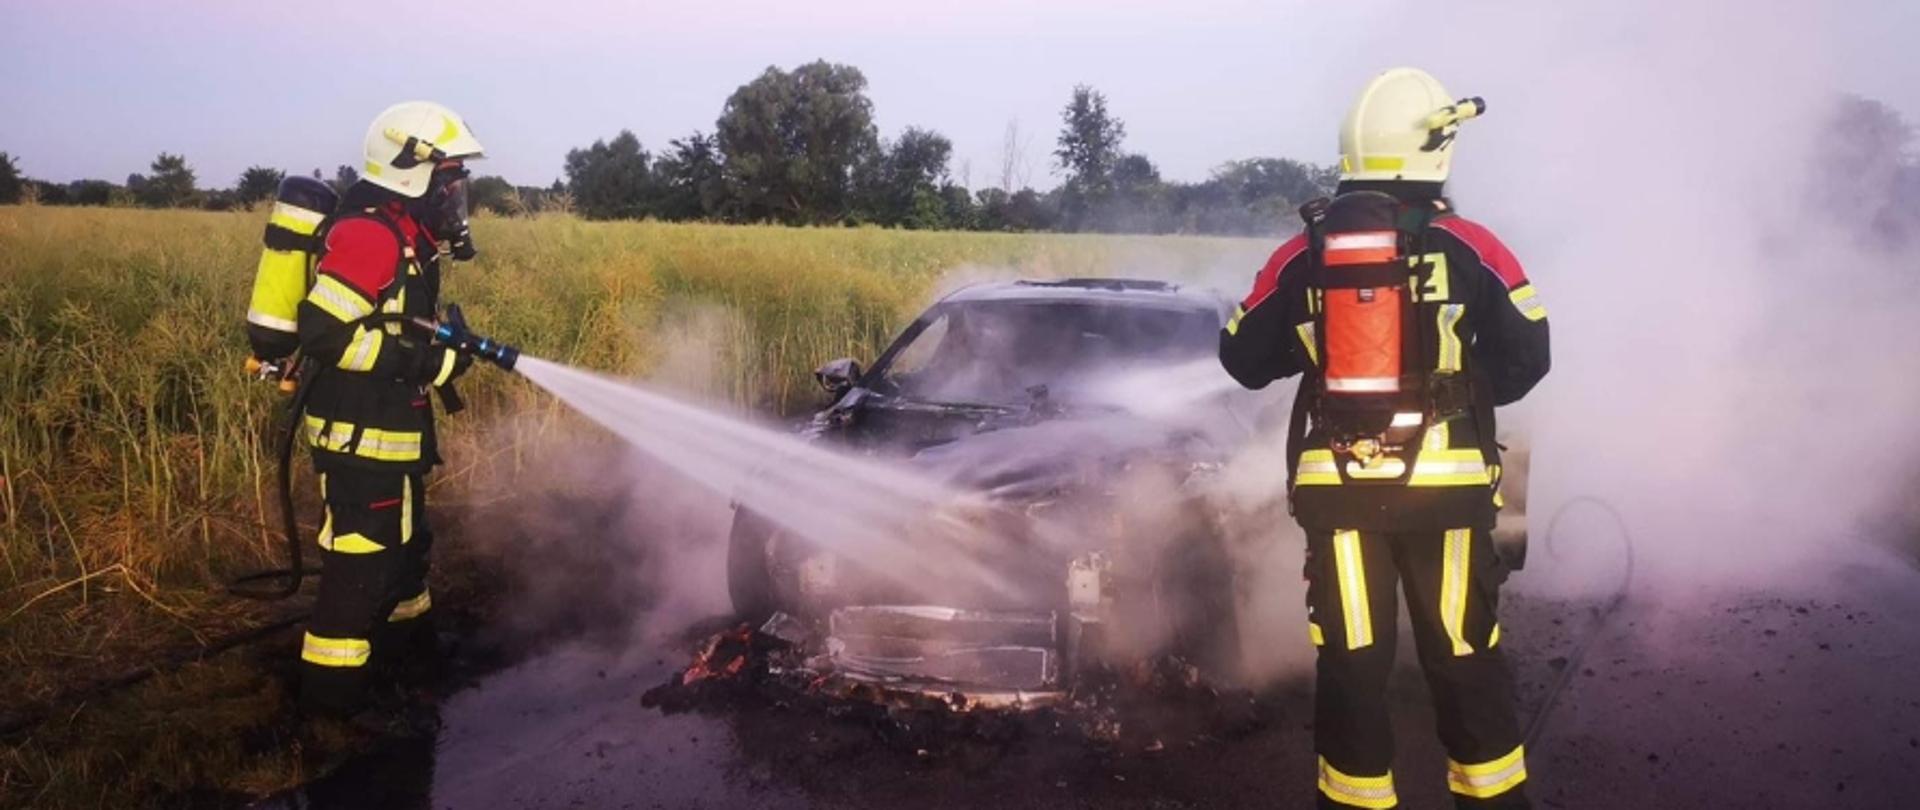 Na zdjęciu widoczny spalony samochód osobowy stojący na jezdni, który dogasza dwóch strażaków w czerwono-czarnych ubraniach specjalnych, białych hełmach, maskach na twarzy i butlach na plecach.